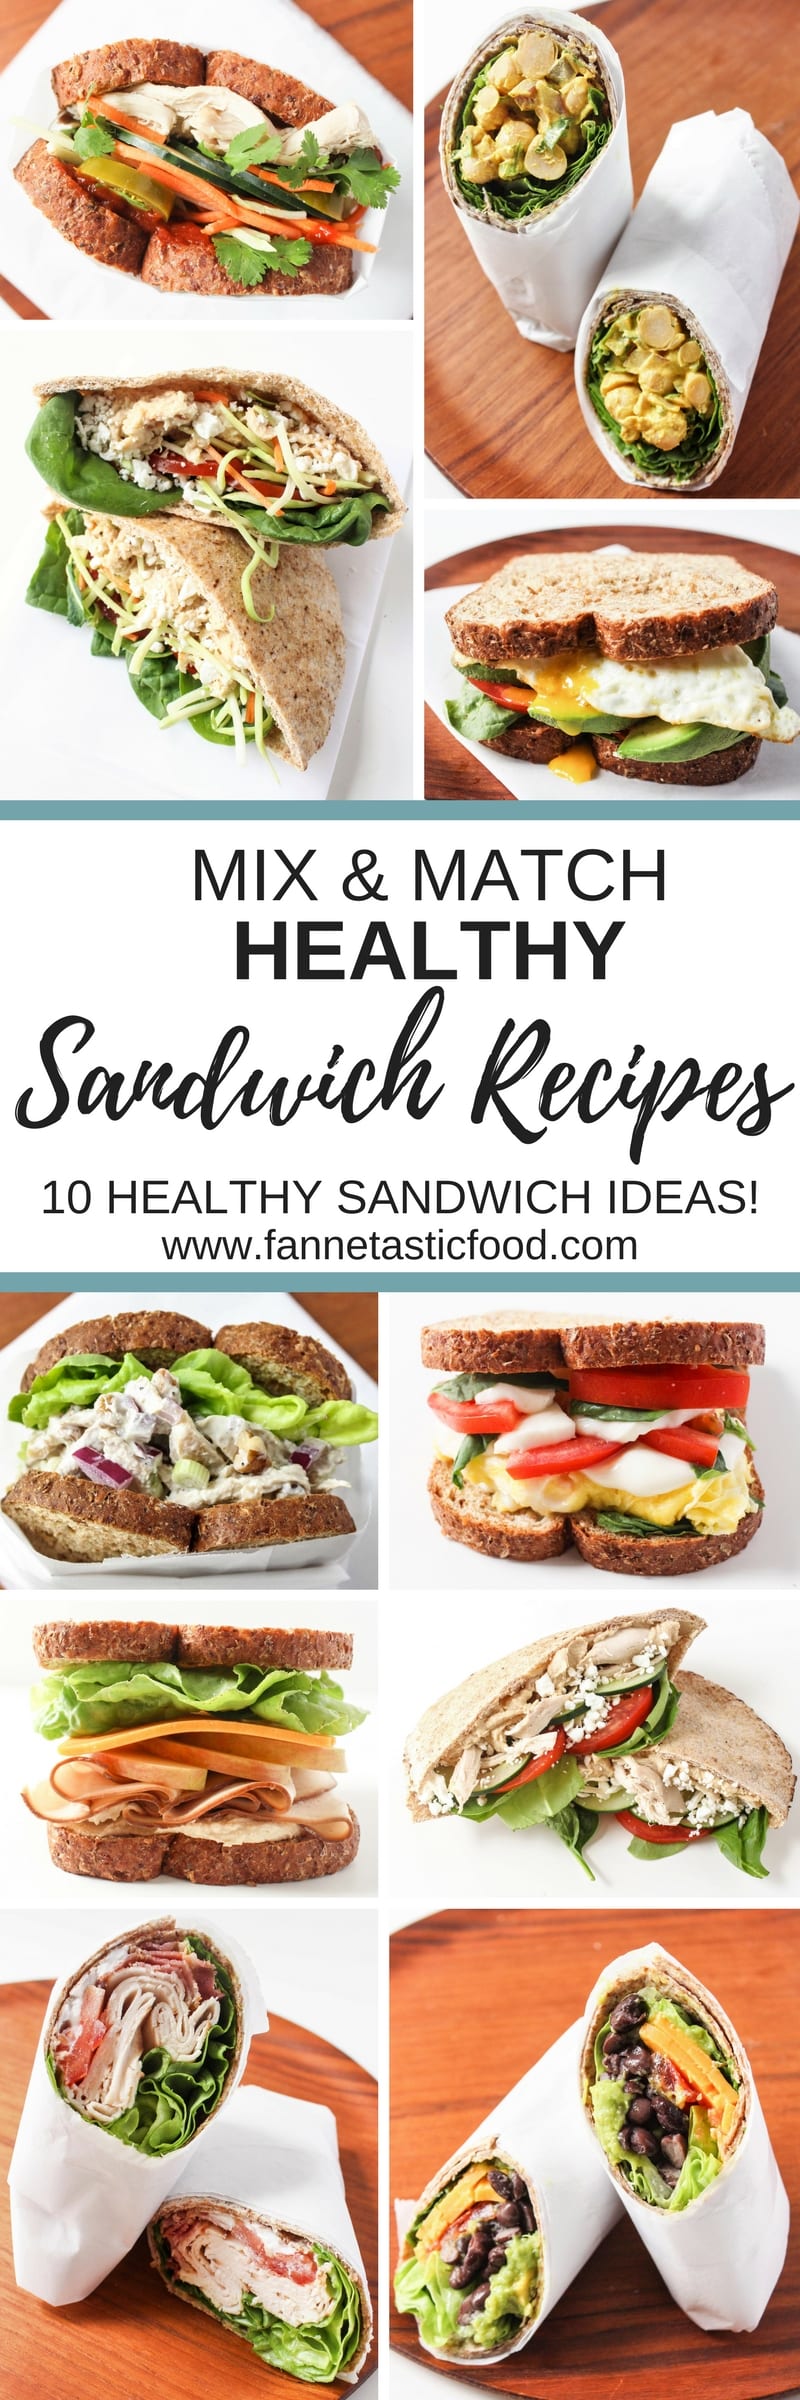 Mix & Match Healthy Sandwich Ideas 